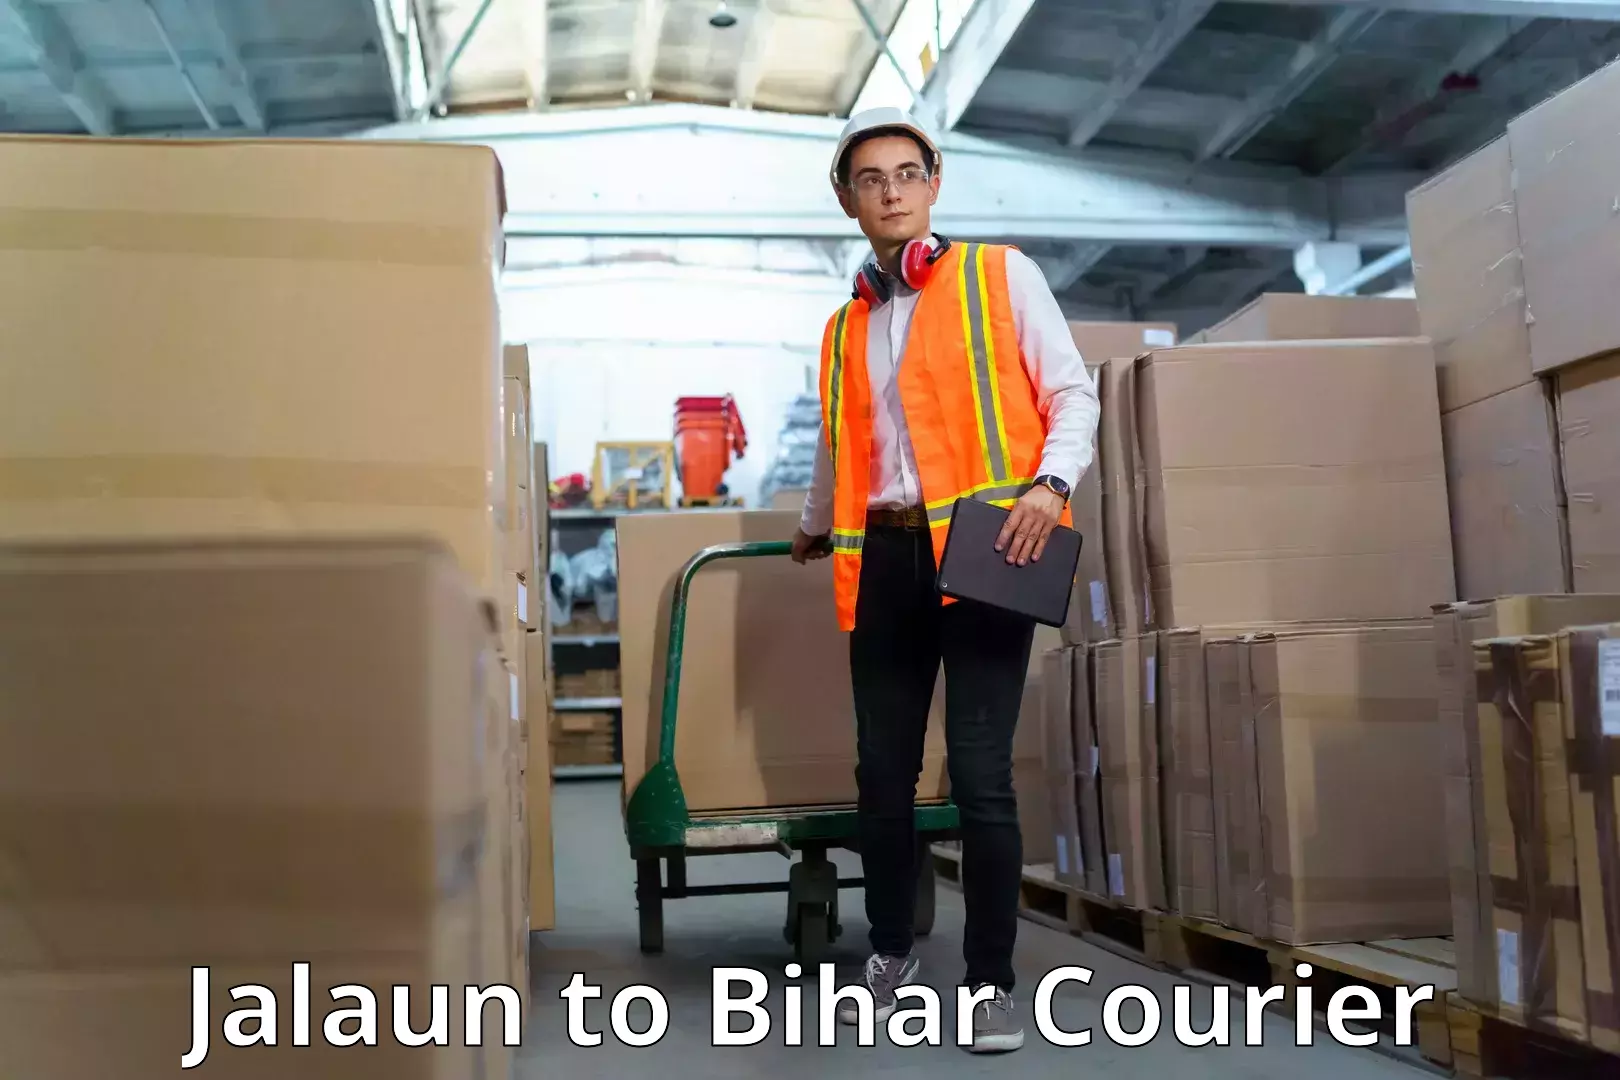 Affordable parcel service Jalaun to Bihar